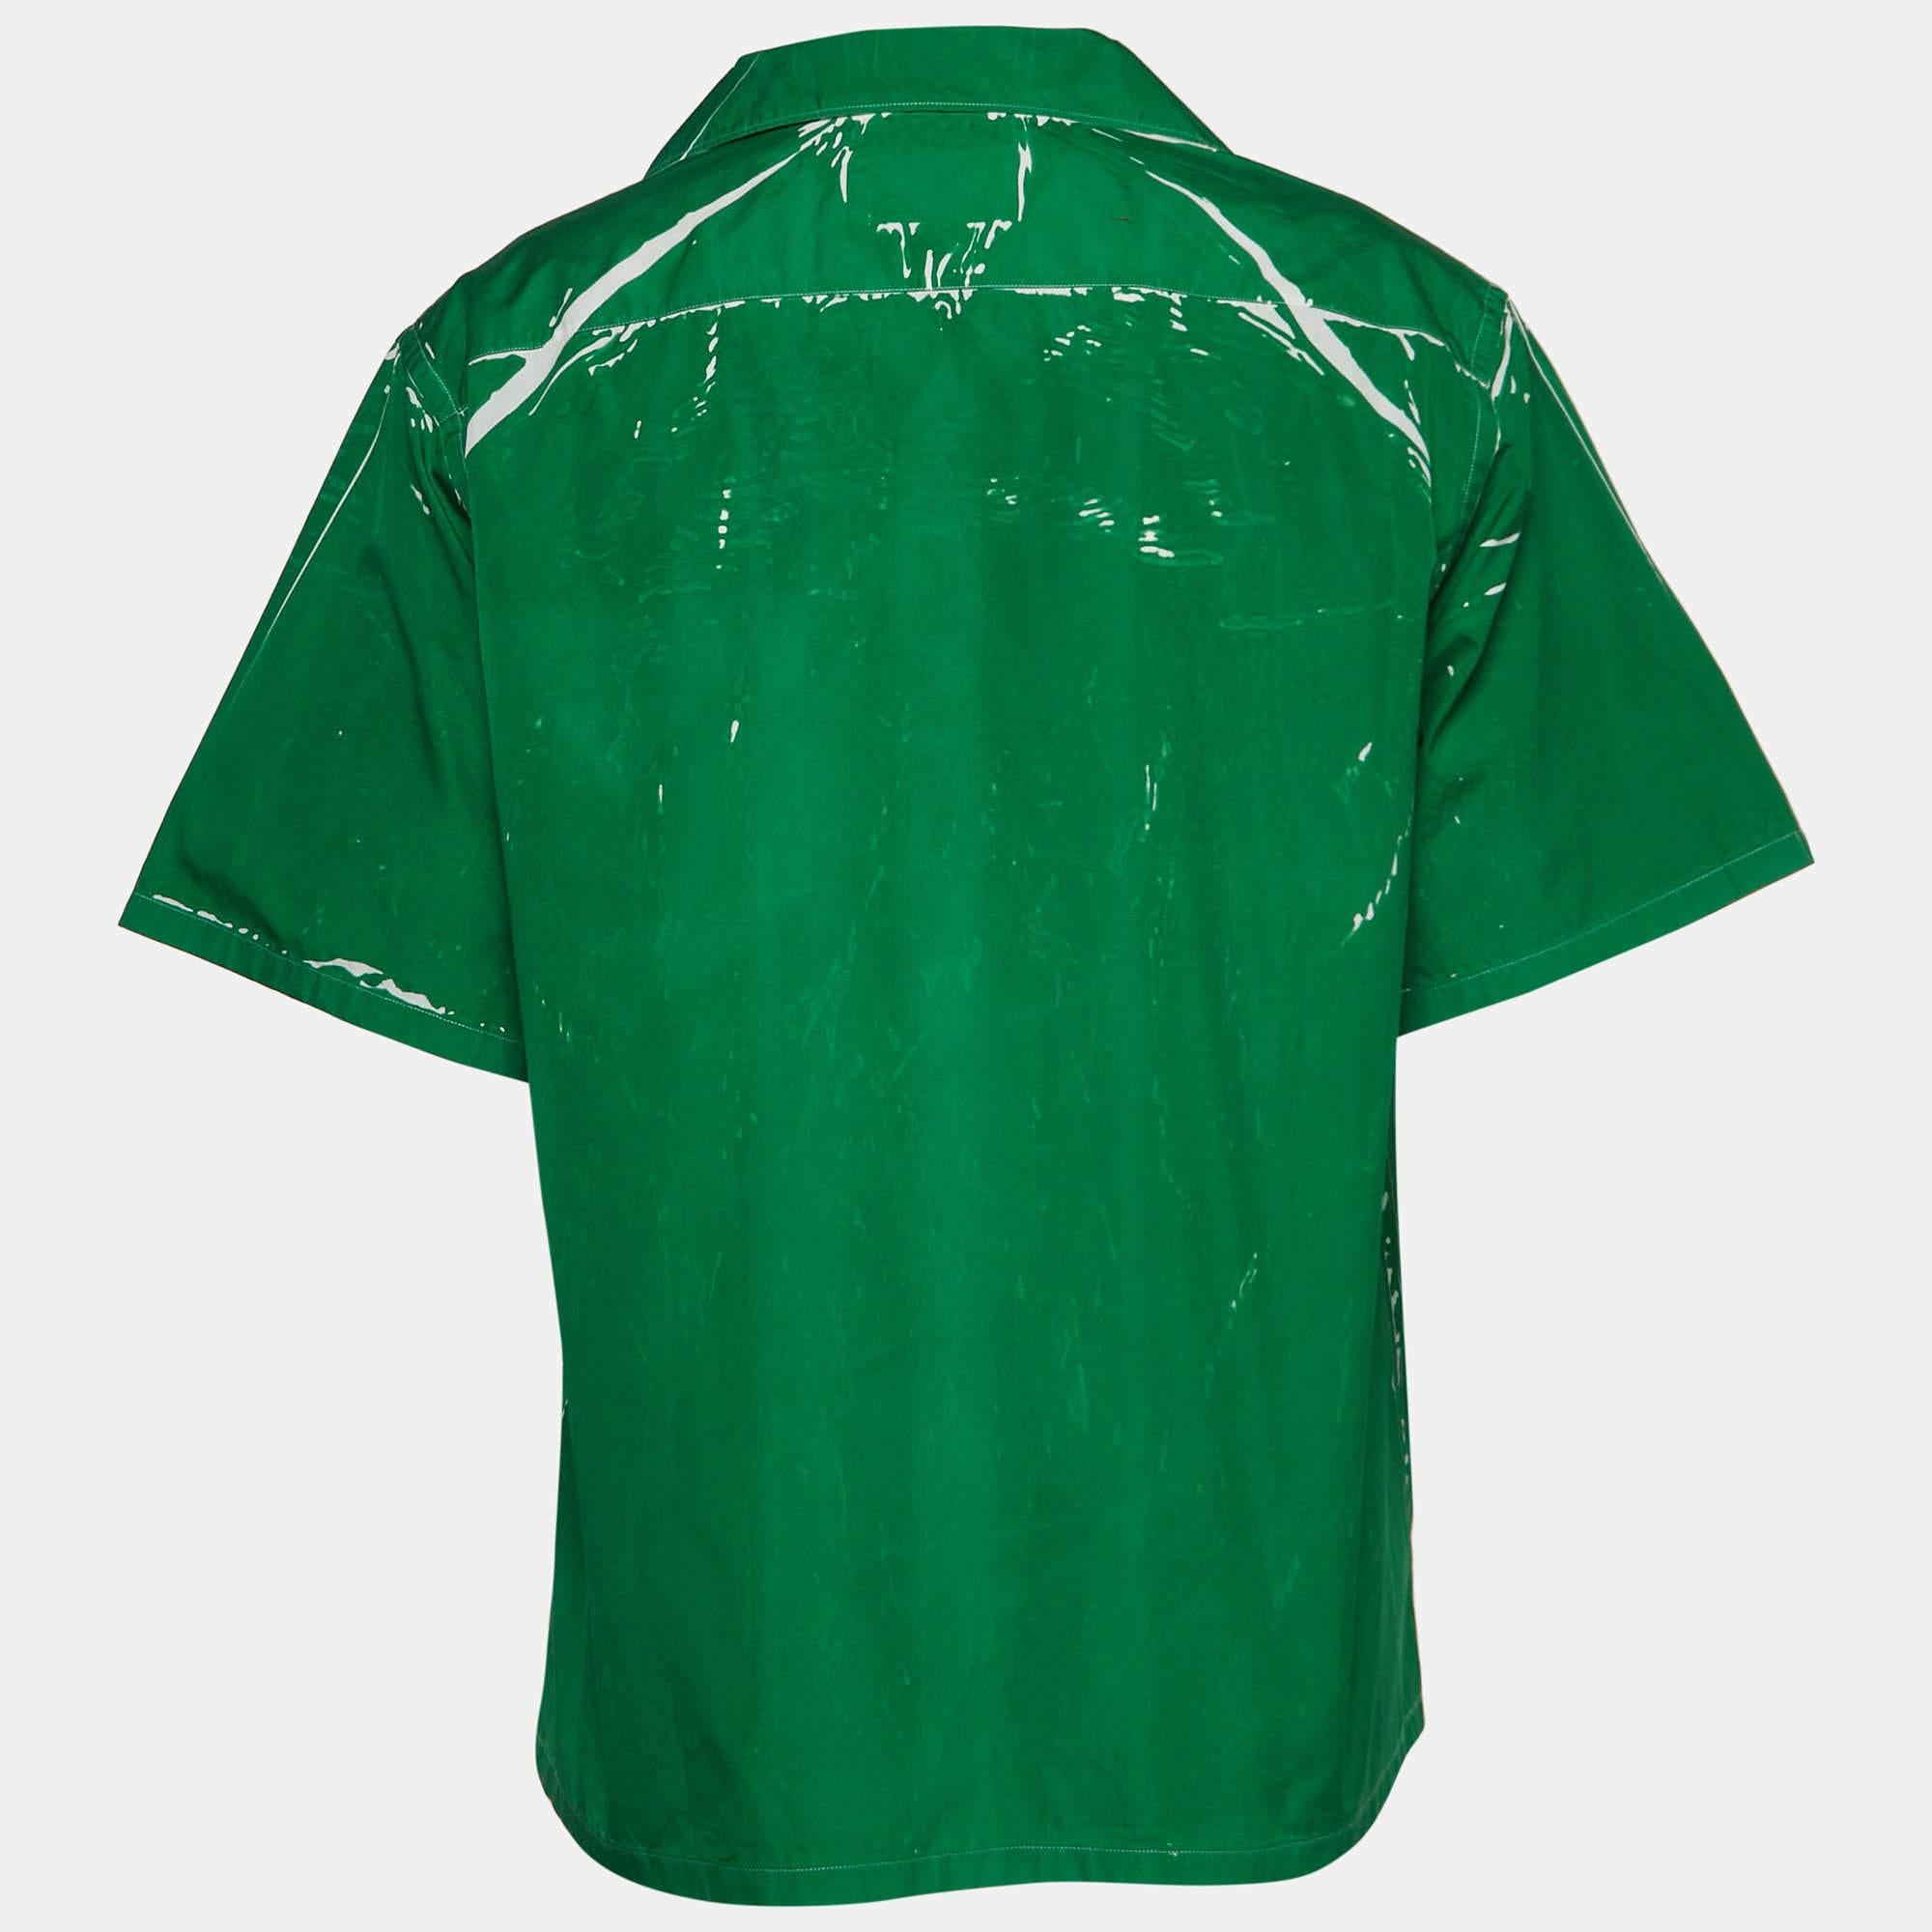 La chemise bowling de Prada incarne l'élégance décontractée. Confectionné en coton de qualité supérieure, il arbore une teinte verte vibrante ornée d'imprimés subtils. La silhouette décontractée de la chemise bowling est complétée par un devant